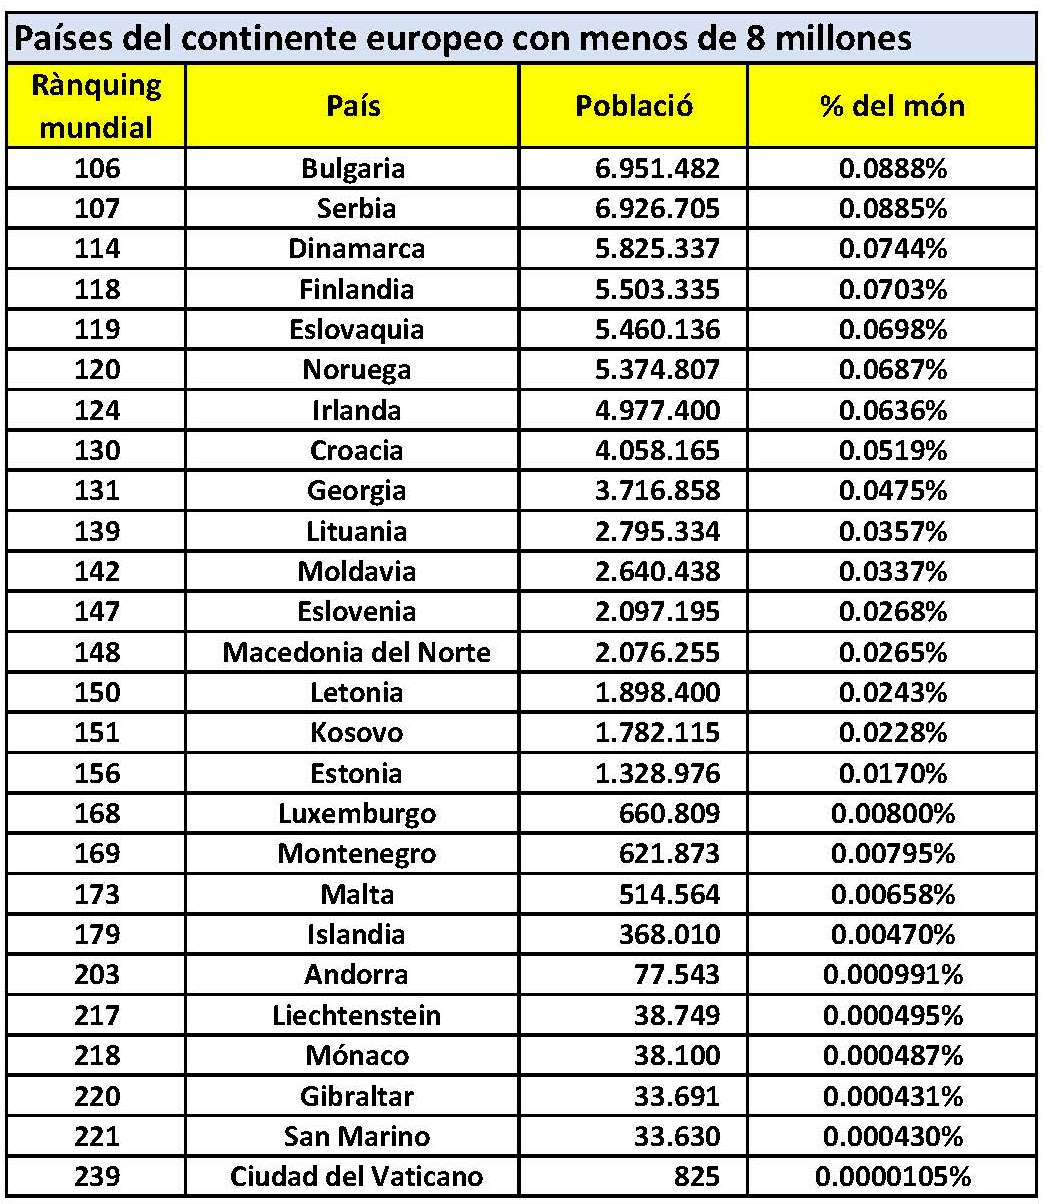 En Cataluña somos más de 8 millones - países